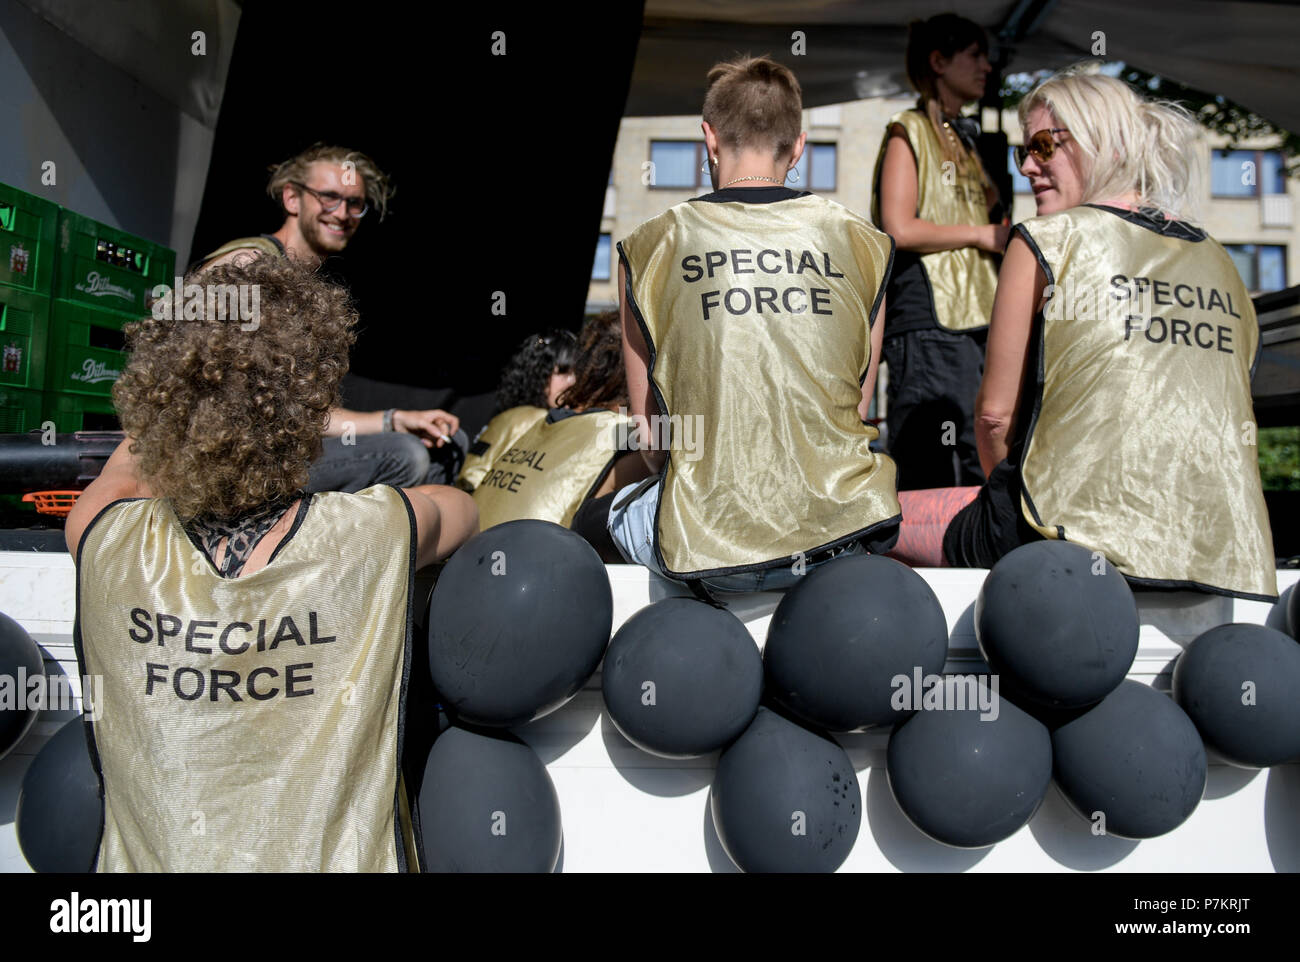 Hamburg, Deutschland. 07 Juli, 2018. Die Demonstranten auf die Straße, ein Jahr nach dem G20-Gipfel, das Tragen von T-Shirts lesen 'Special Force'. Die Demonstration läuft unter dem Motto "Solidarität ohne Grenzen statt G 20'. Quelle: Axel Heimken/dpa/Alamy leben Nachrichten Stockfoto